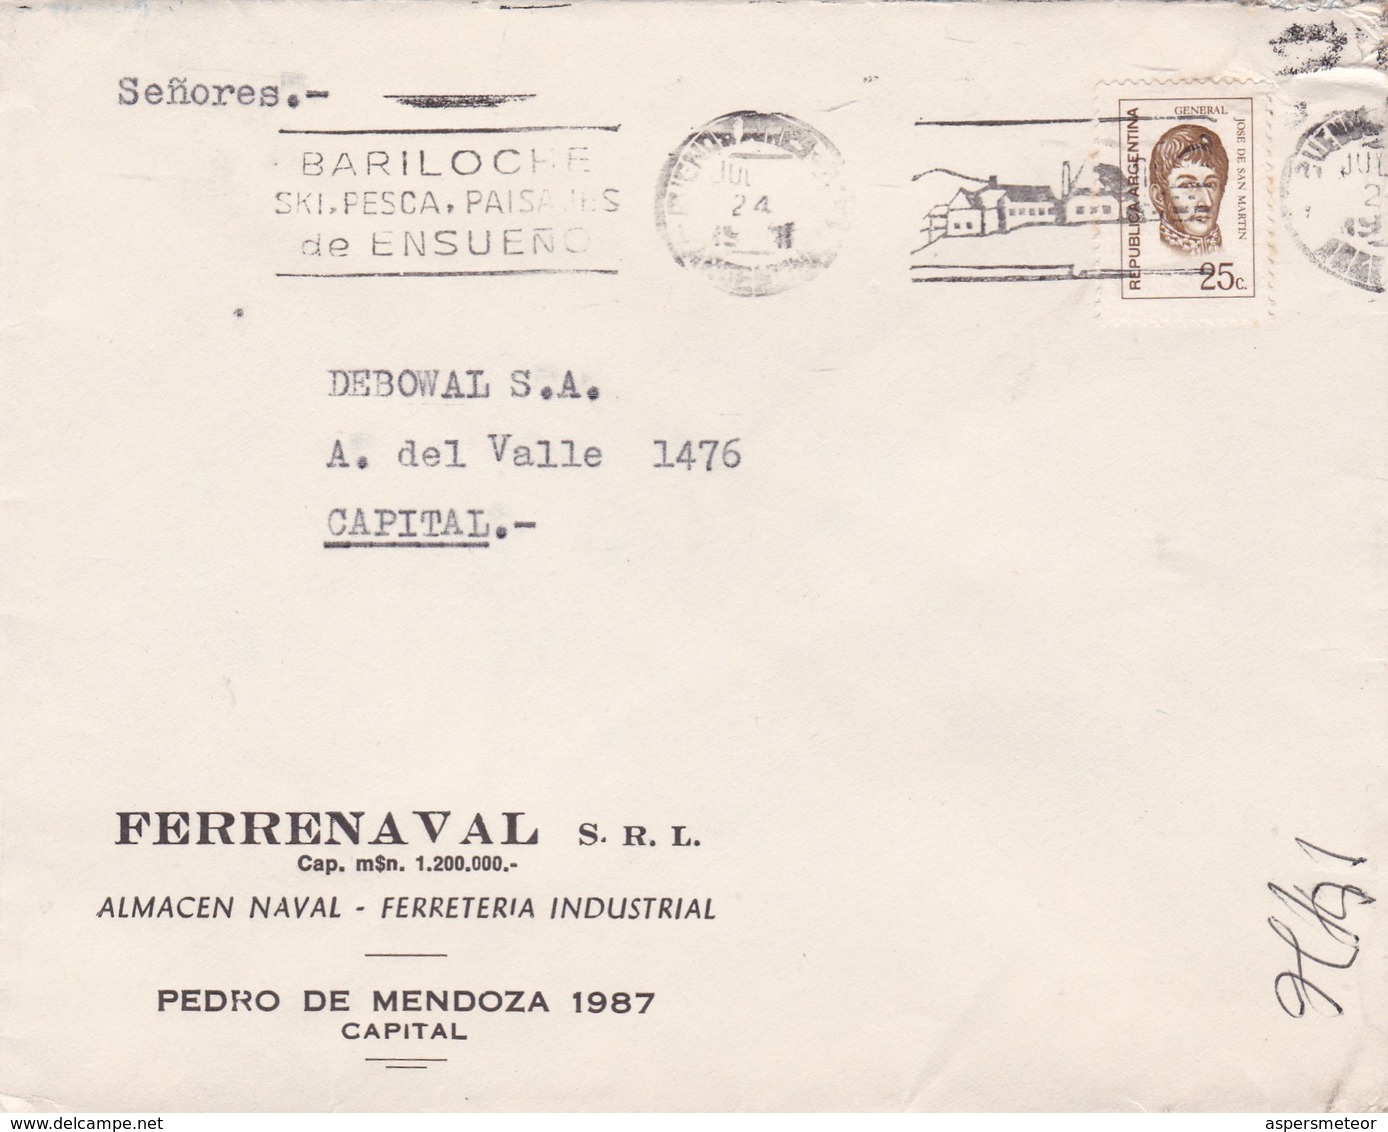 FERRENAVAL SRL- ENVELOPPE CIRCULEE BUENOS AIRES 1972 BANDELETA PARLANTE: BARILOCHE, SKI PESCA PAISAJES DE ENSUEÑ - BLEUP - Lettres & Documents